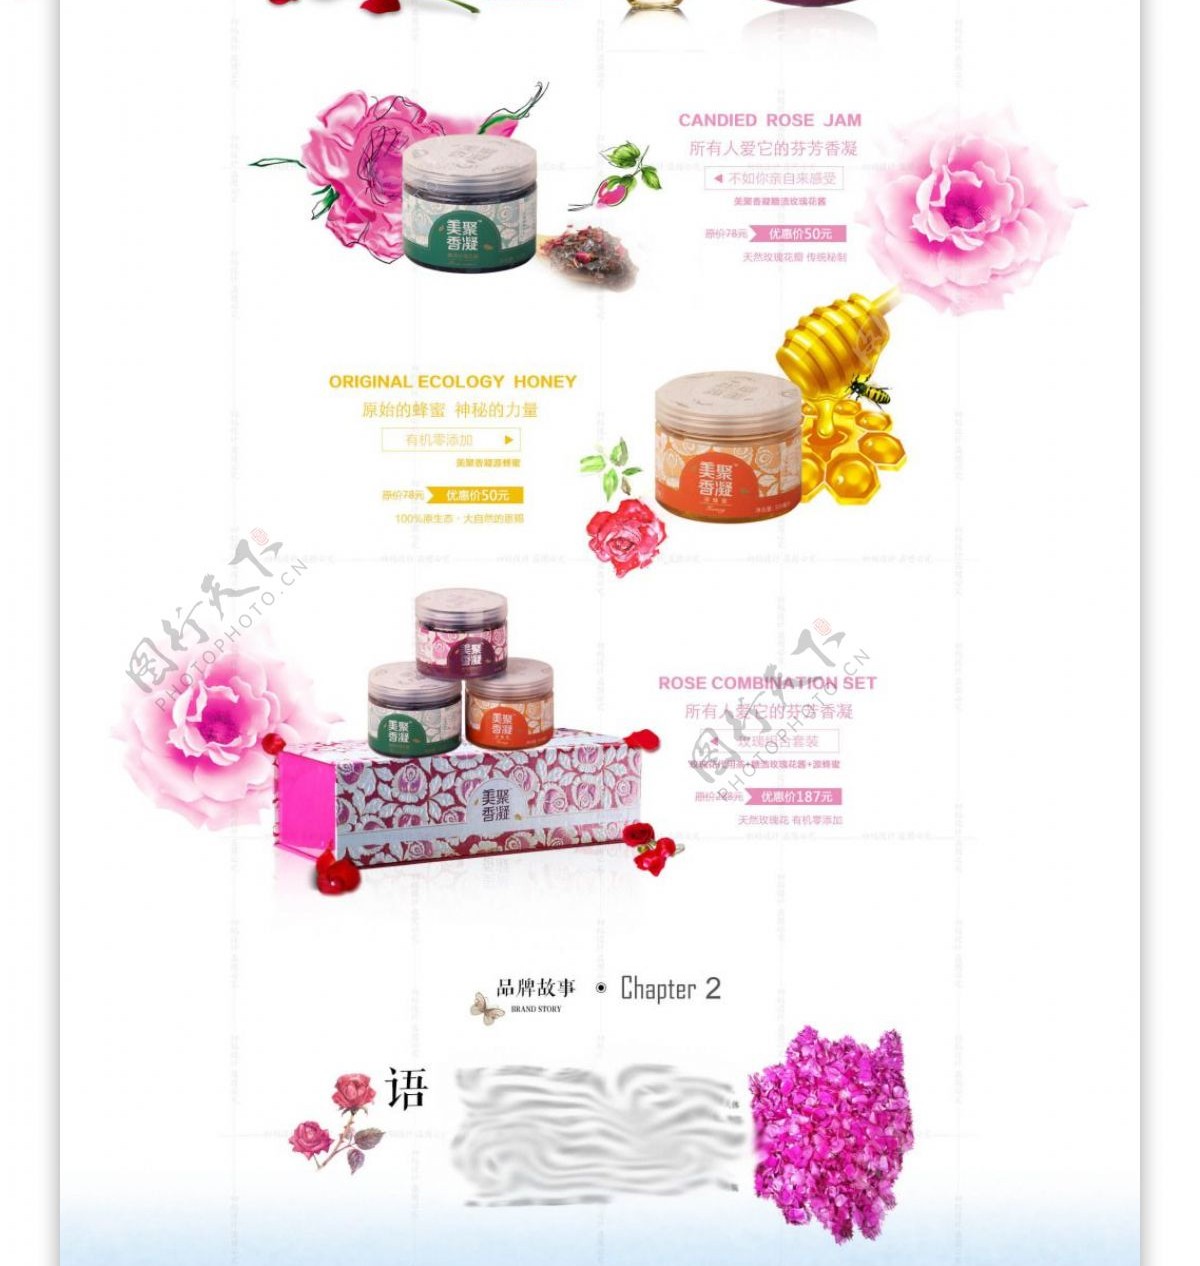 玫瑰花类产品首页